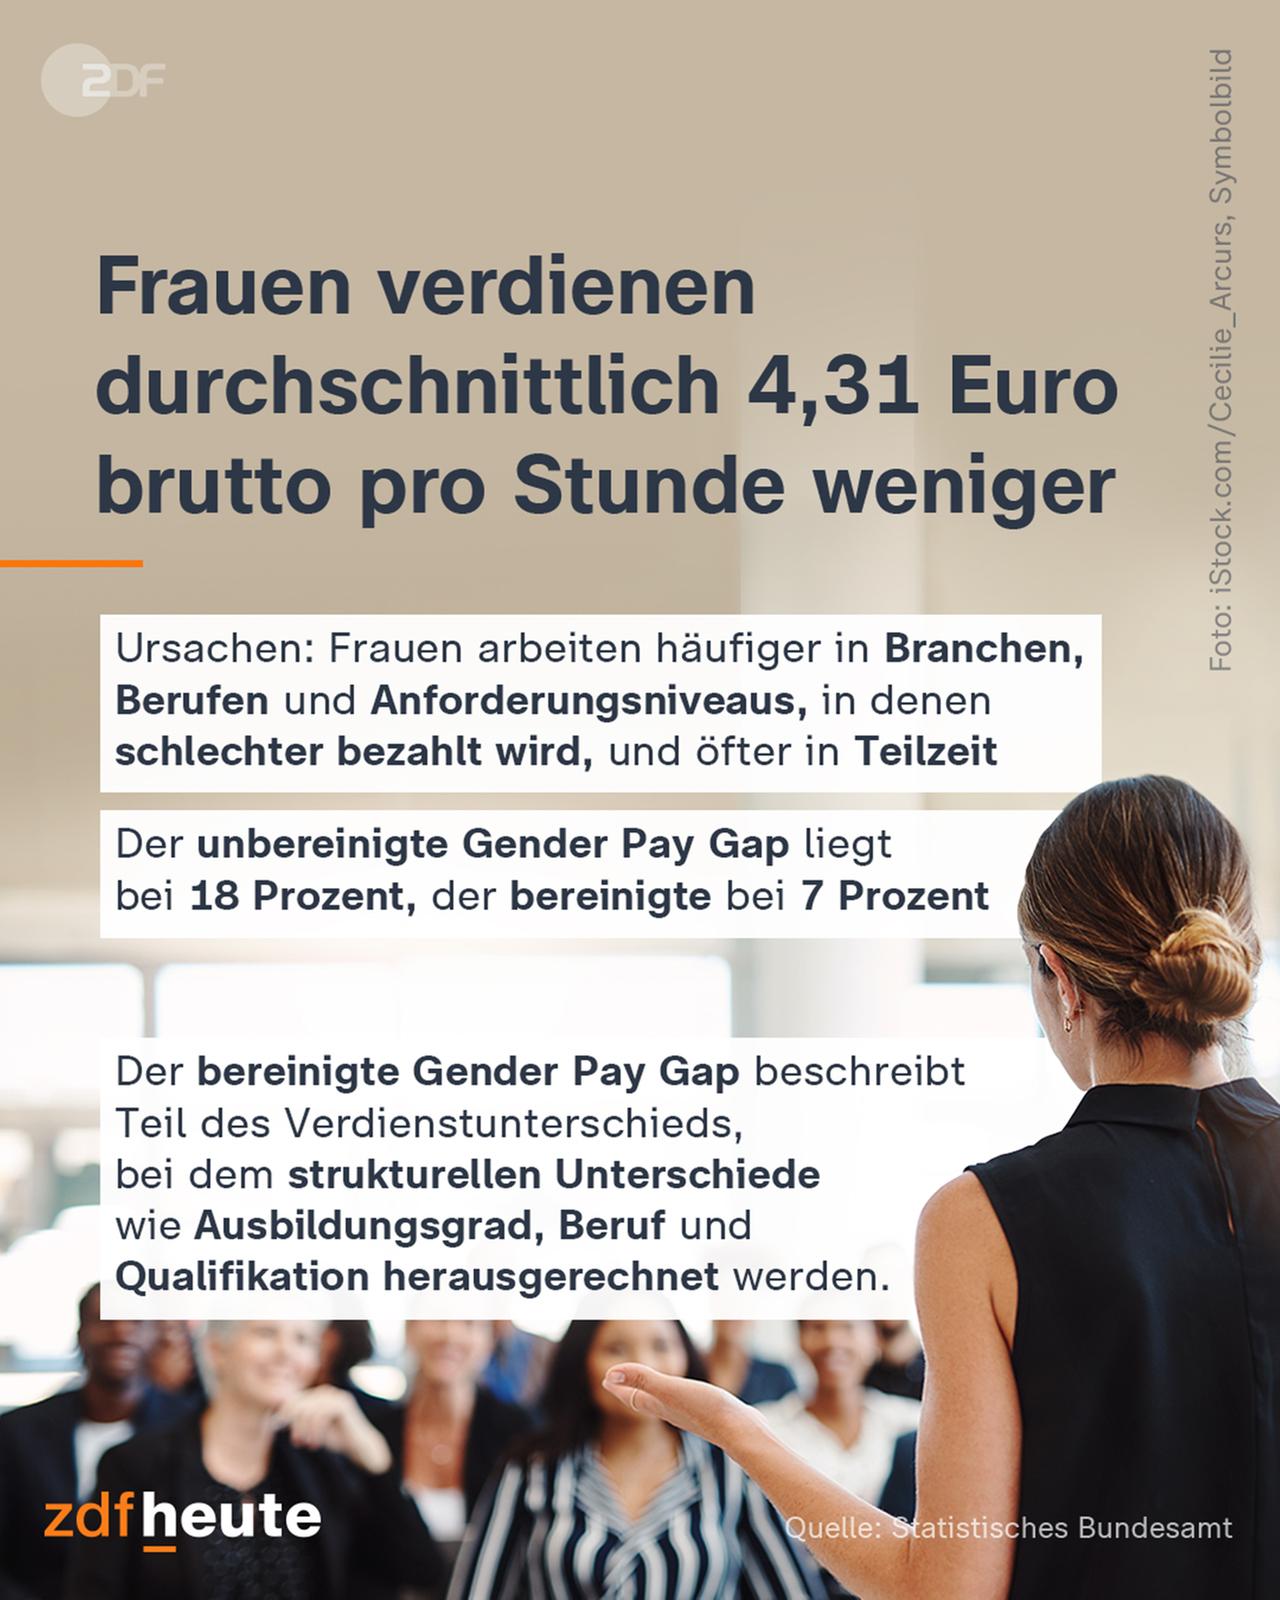 Frauen verdienen durchschnittlich 4,31 Euro brutto pro Stunde weniger